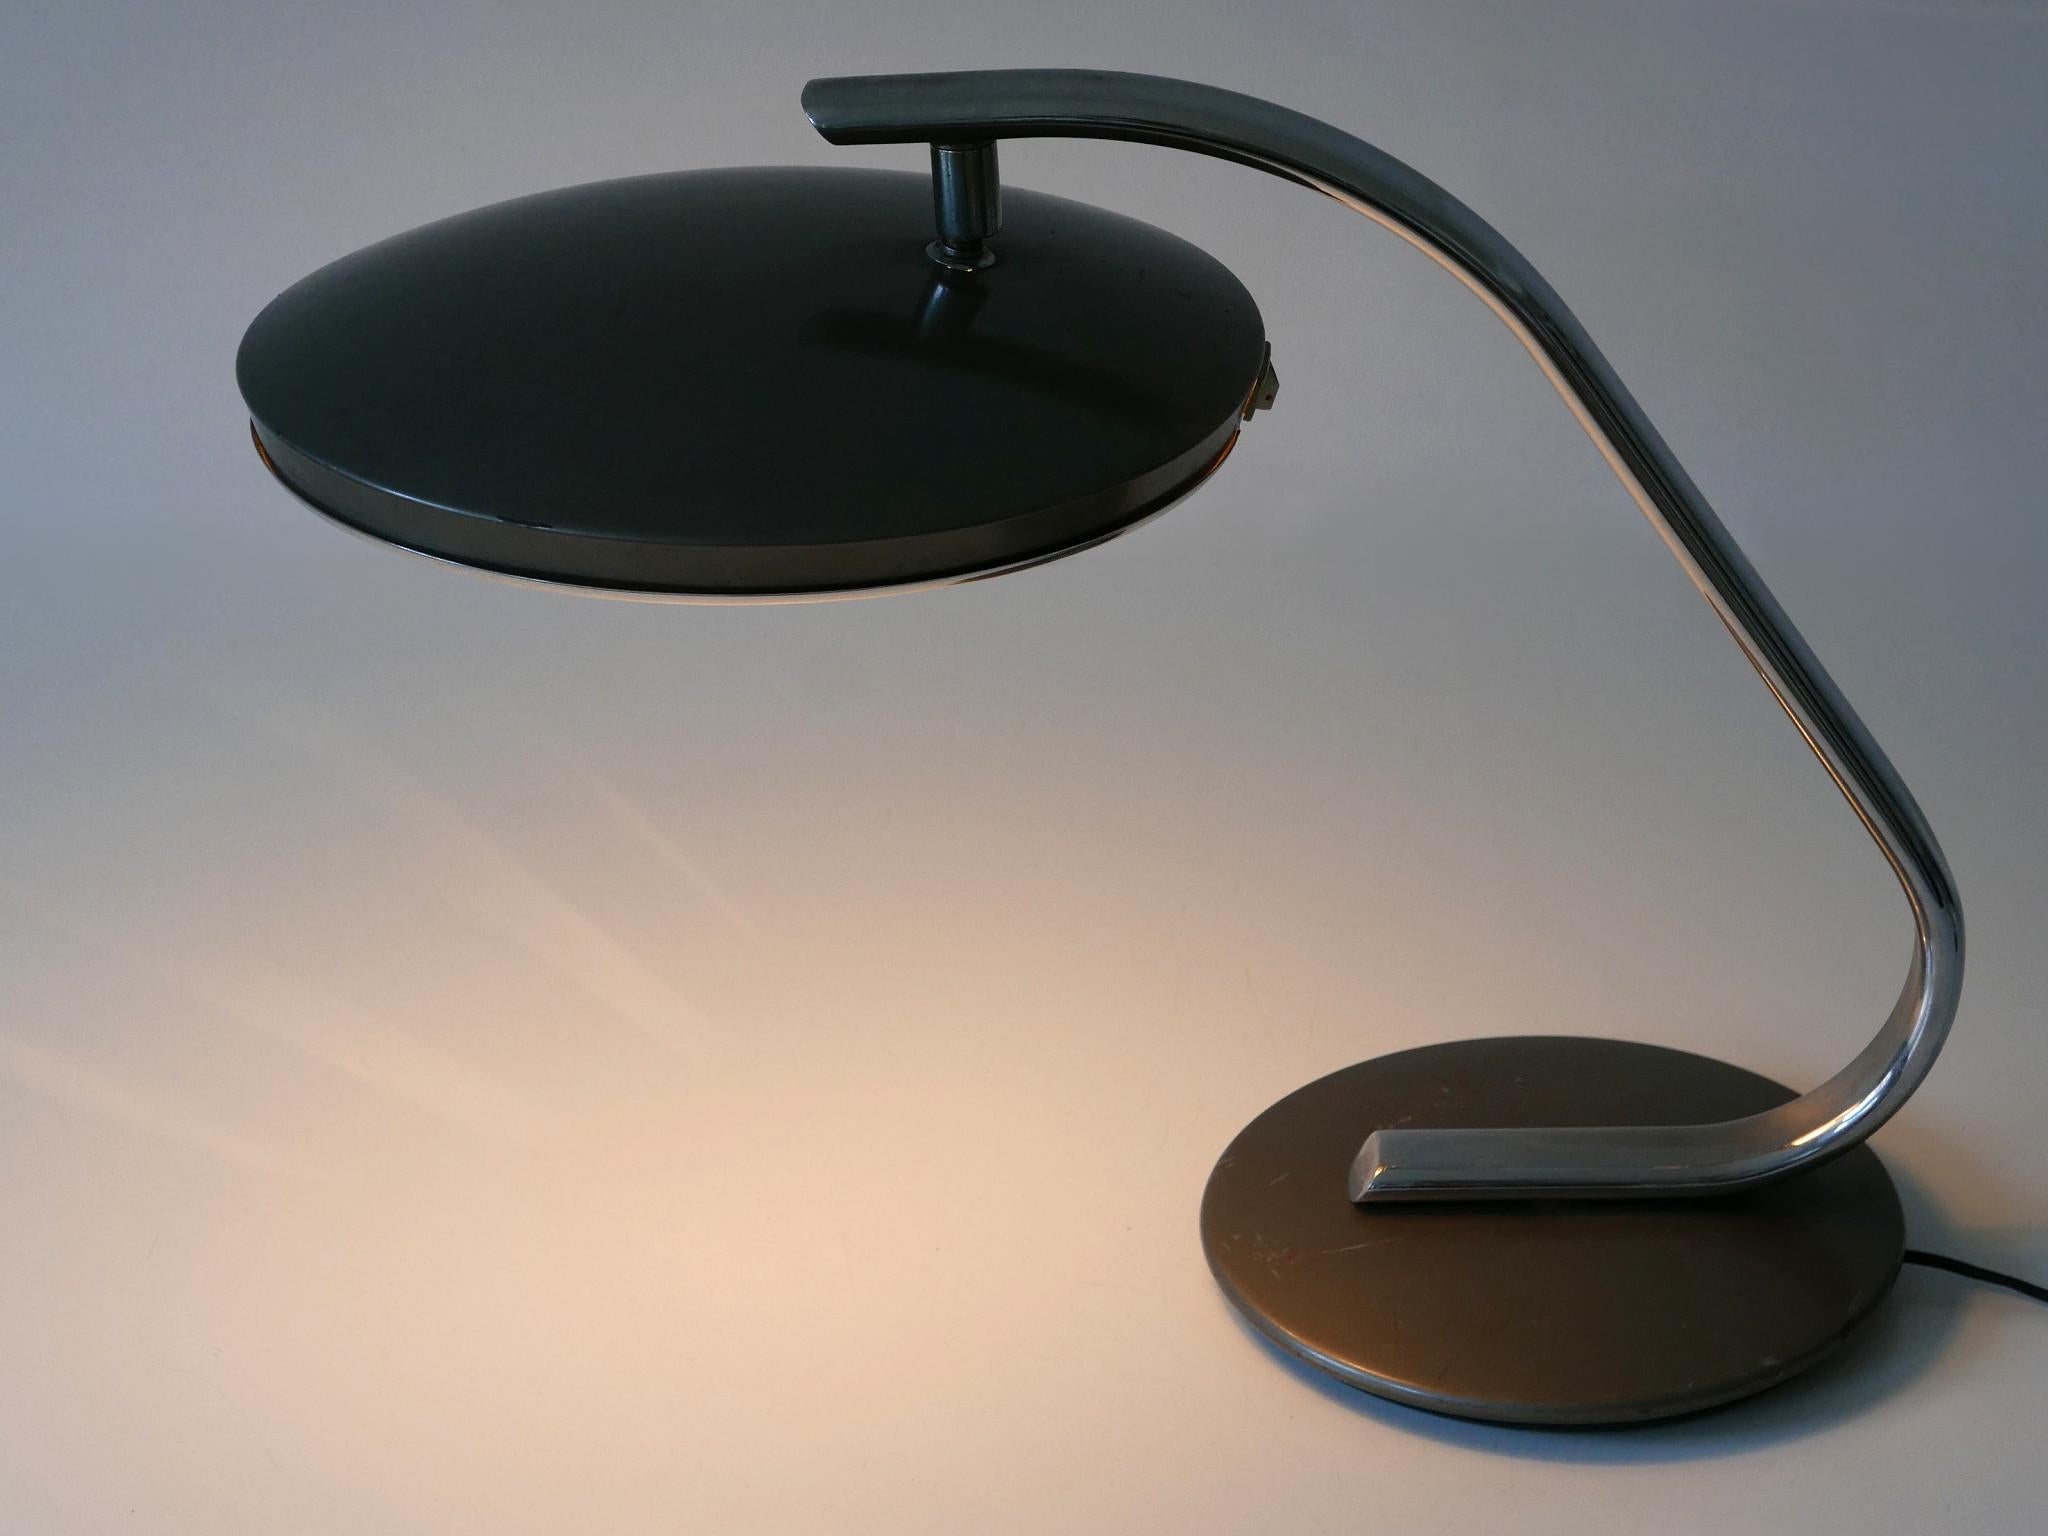 Elegante Mid Century Modern Tischlampe oder Schreibtischlampe 'Boomerang' in Grau und Silber. Lampenschirm drehbar. Entworfen und hergestellt von Fase, Spanien, 1960er Jahre.

Die Tischleuchte aus grauem und silberfarbenem Metall wird mit 2 x E27 /